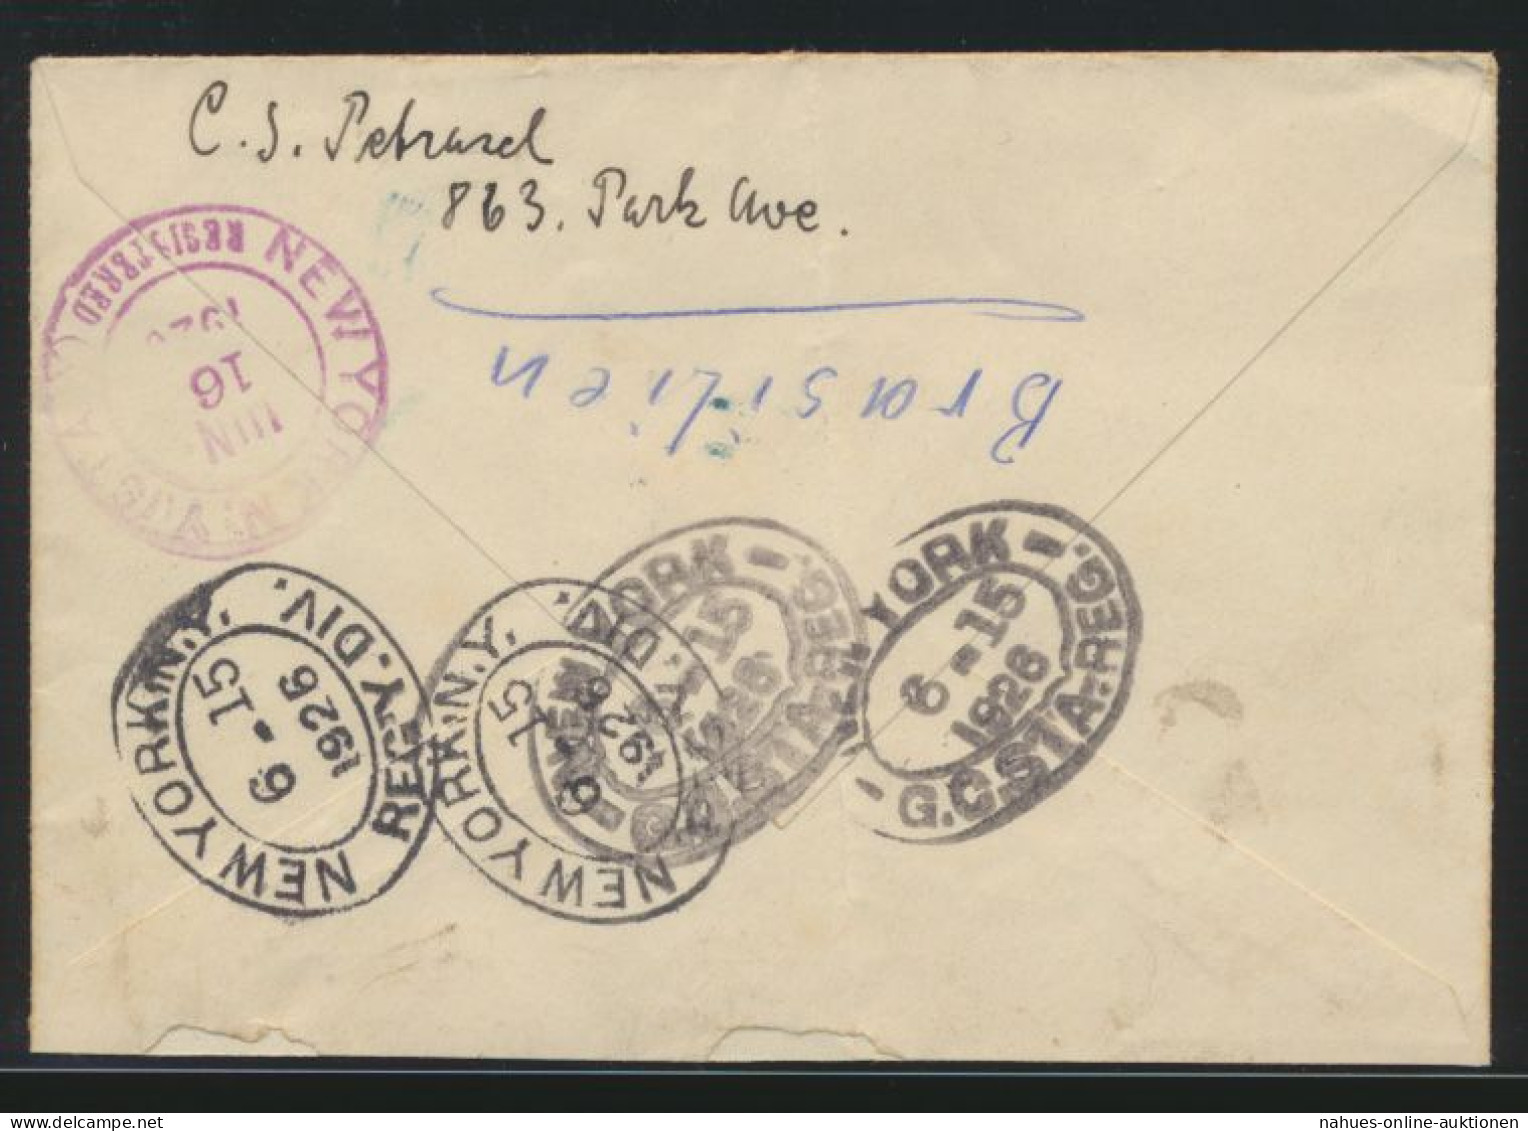 USA Flugpost Brief 20 Cent New York Mit 9 Stempeln Sehr Speziell - Lettres & Documents